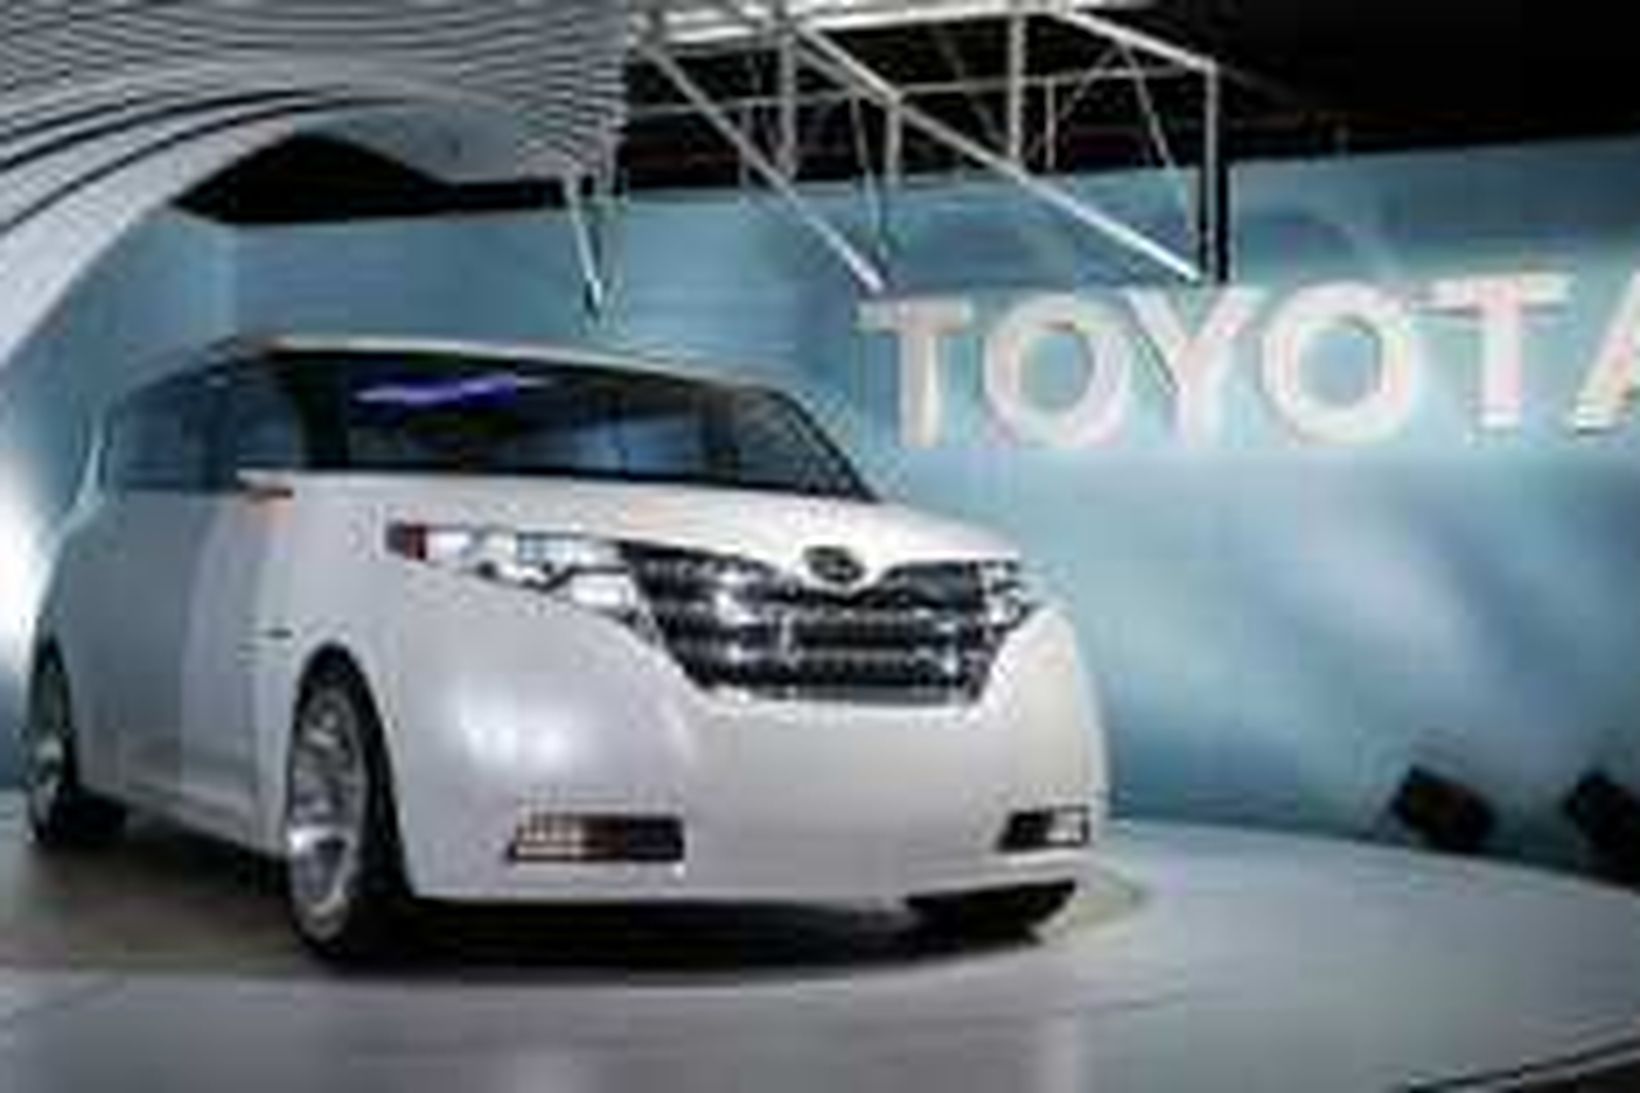 Starfsmenn Toyota vinna mikla yfirvinnu.